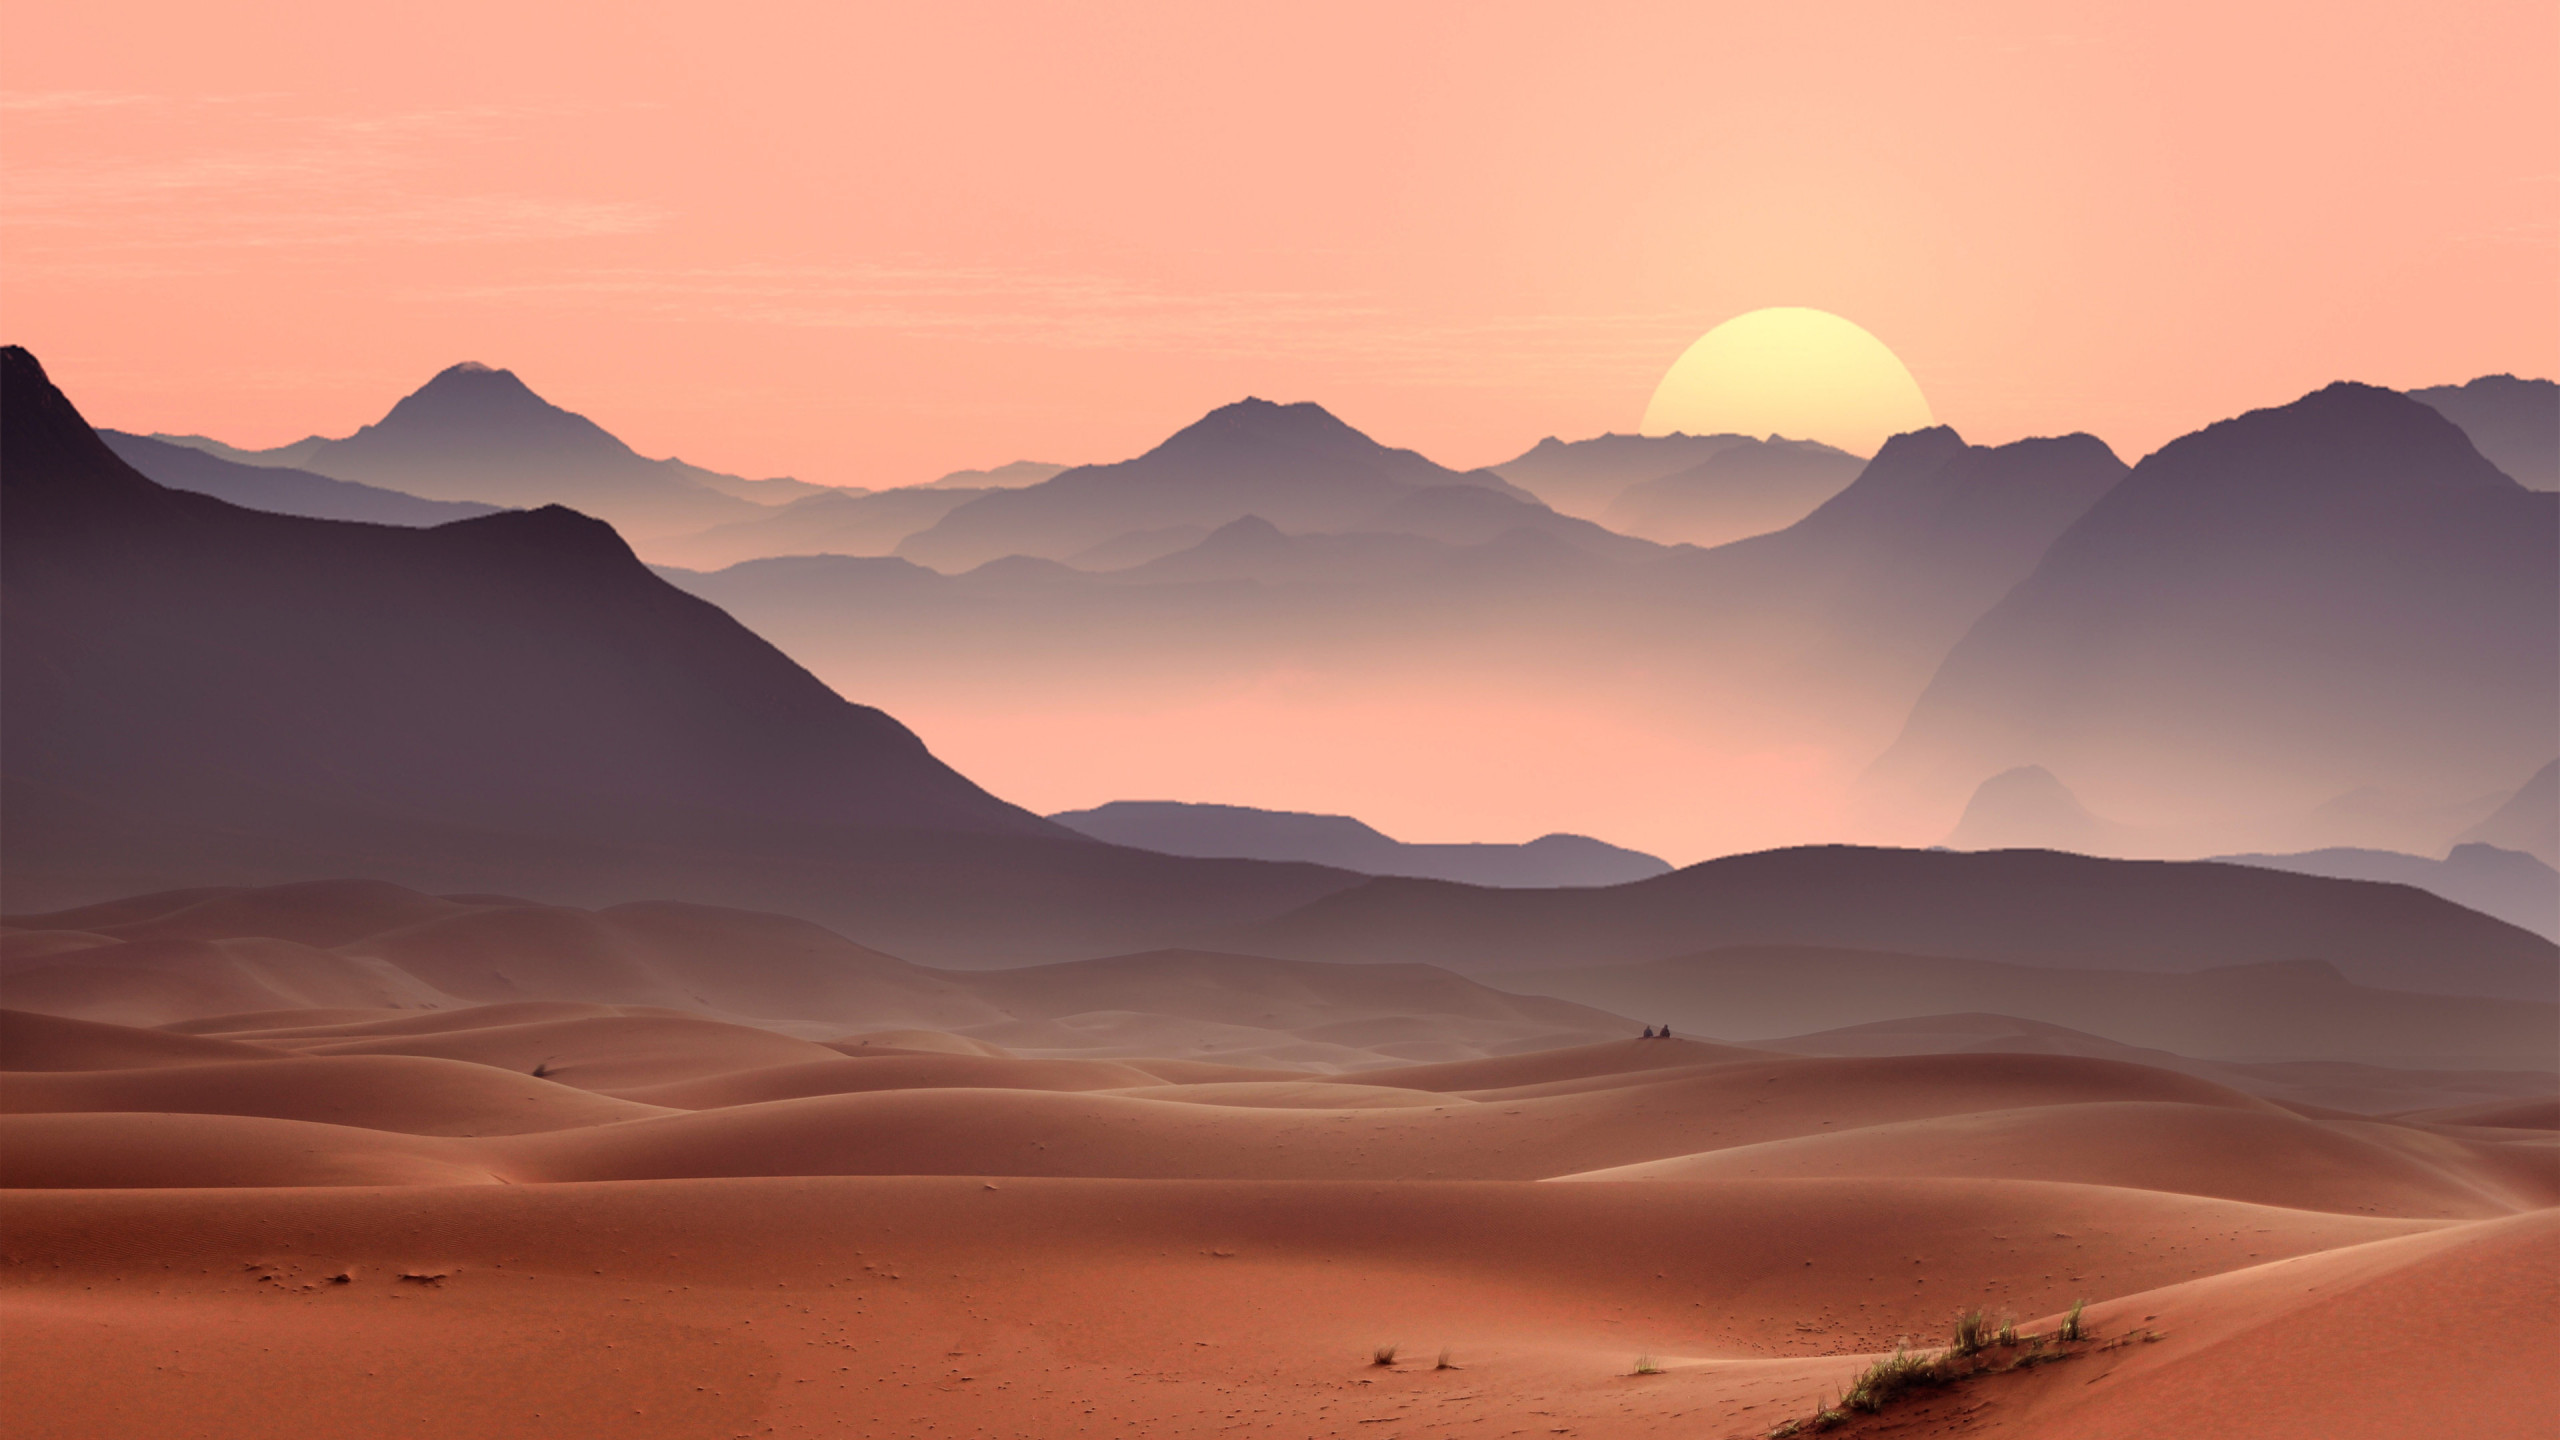 Sunset on the desert dunes wallpaper 2560x1440